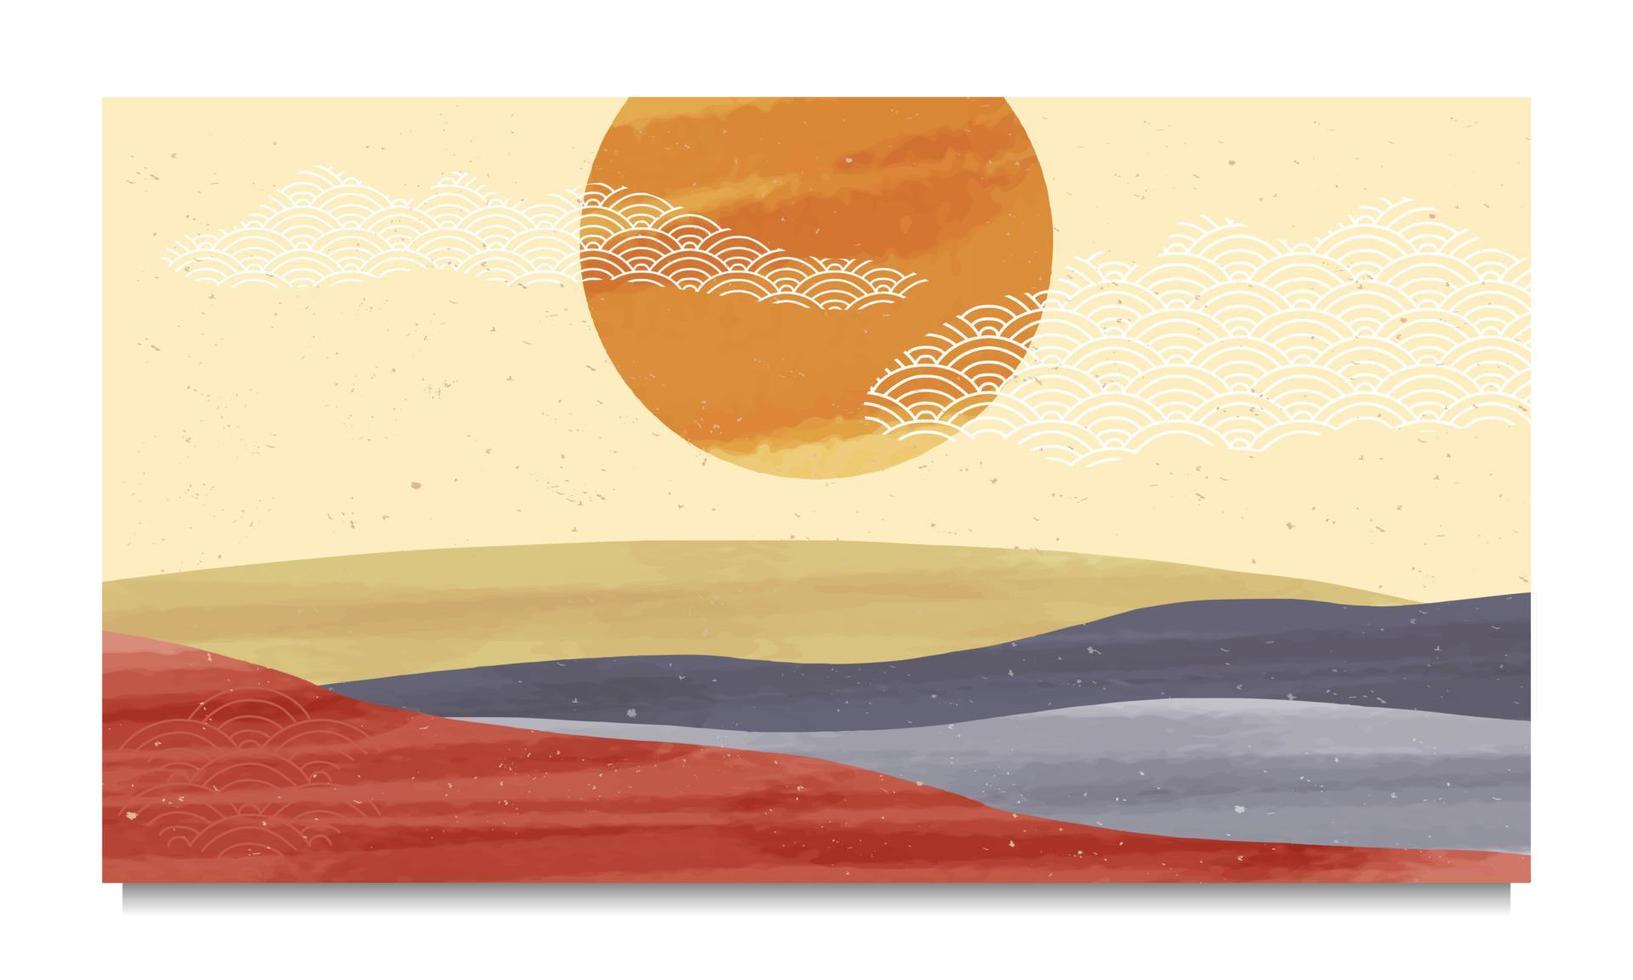 set di metà secolo moderno minimalista. natura astratta, mare, cielo, sole, poster di paesaggio di montagna rocciosa. sfondo del paesaggio geometrico in stile scandinavo. illustrazione vettoriale